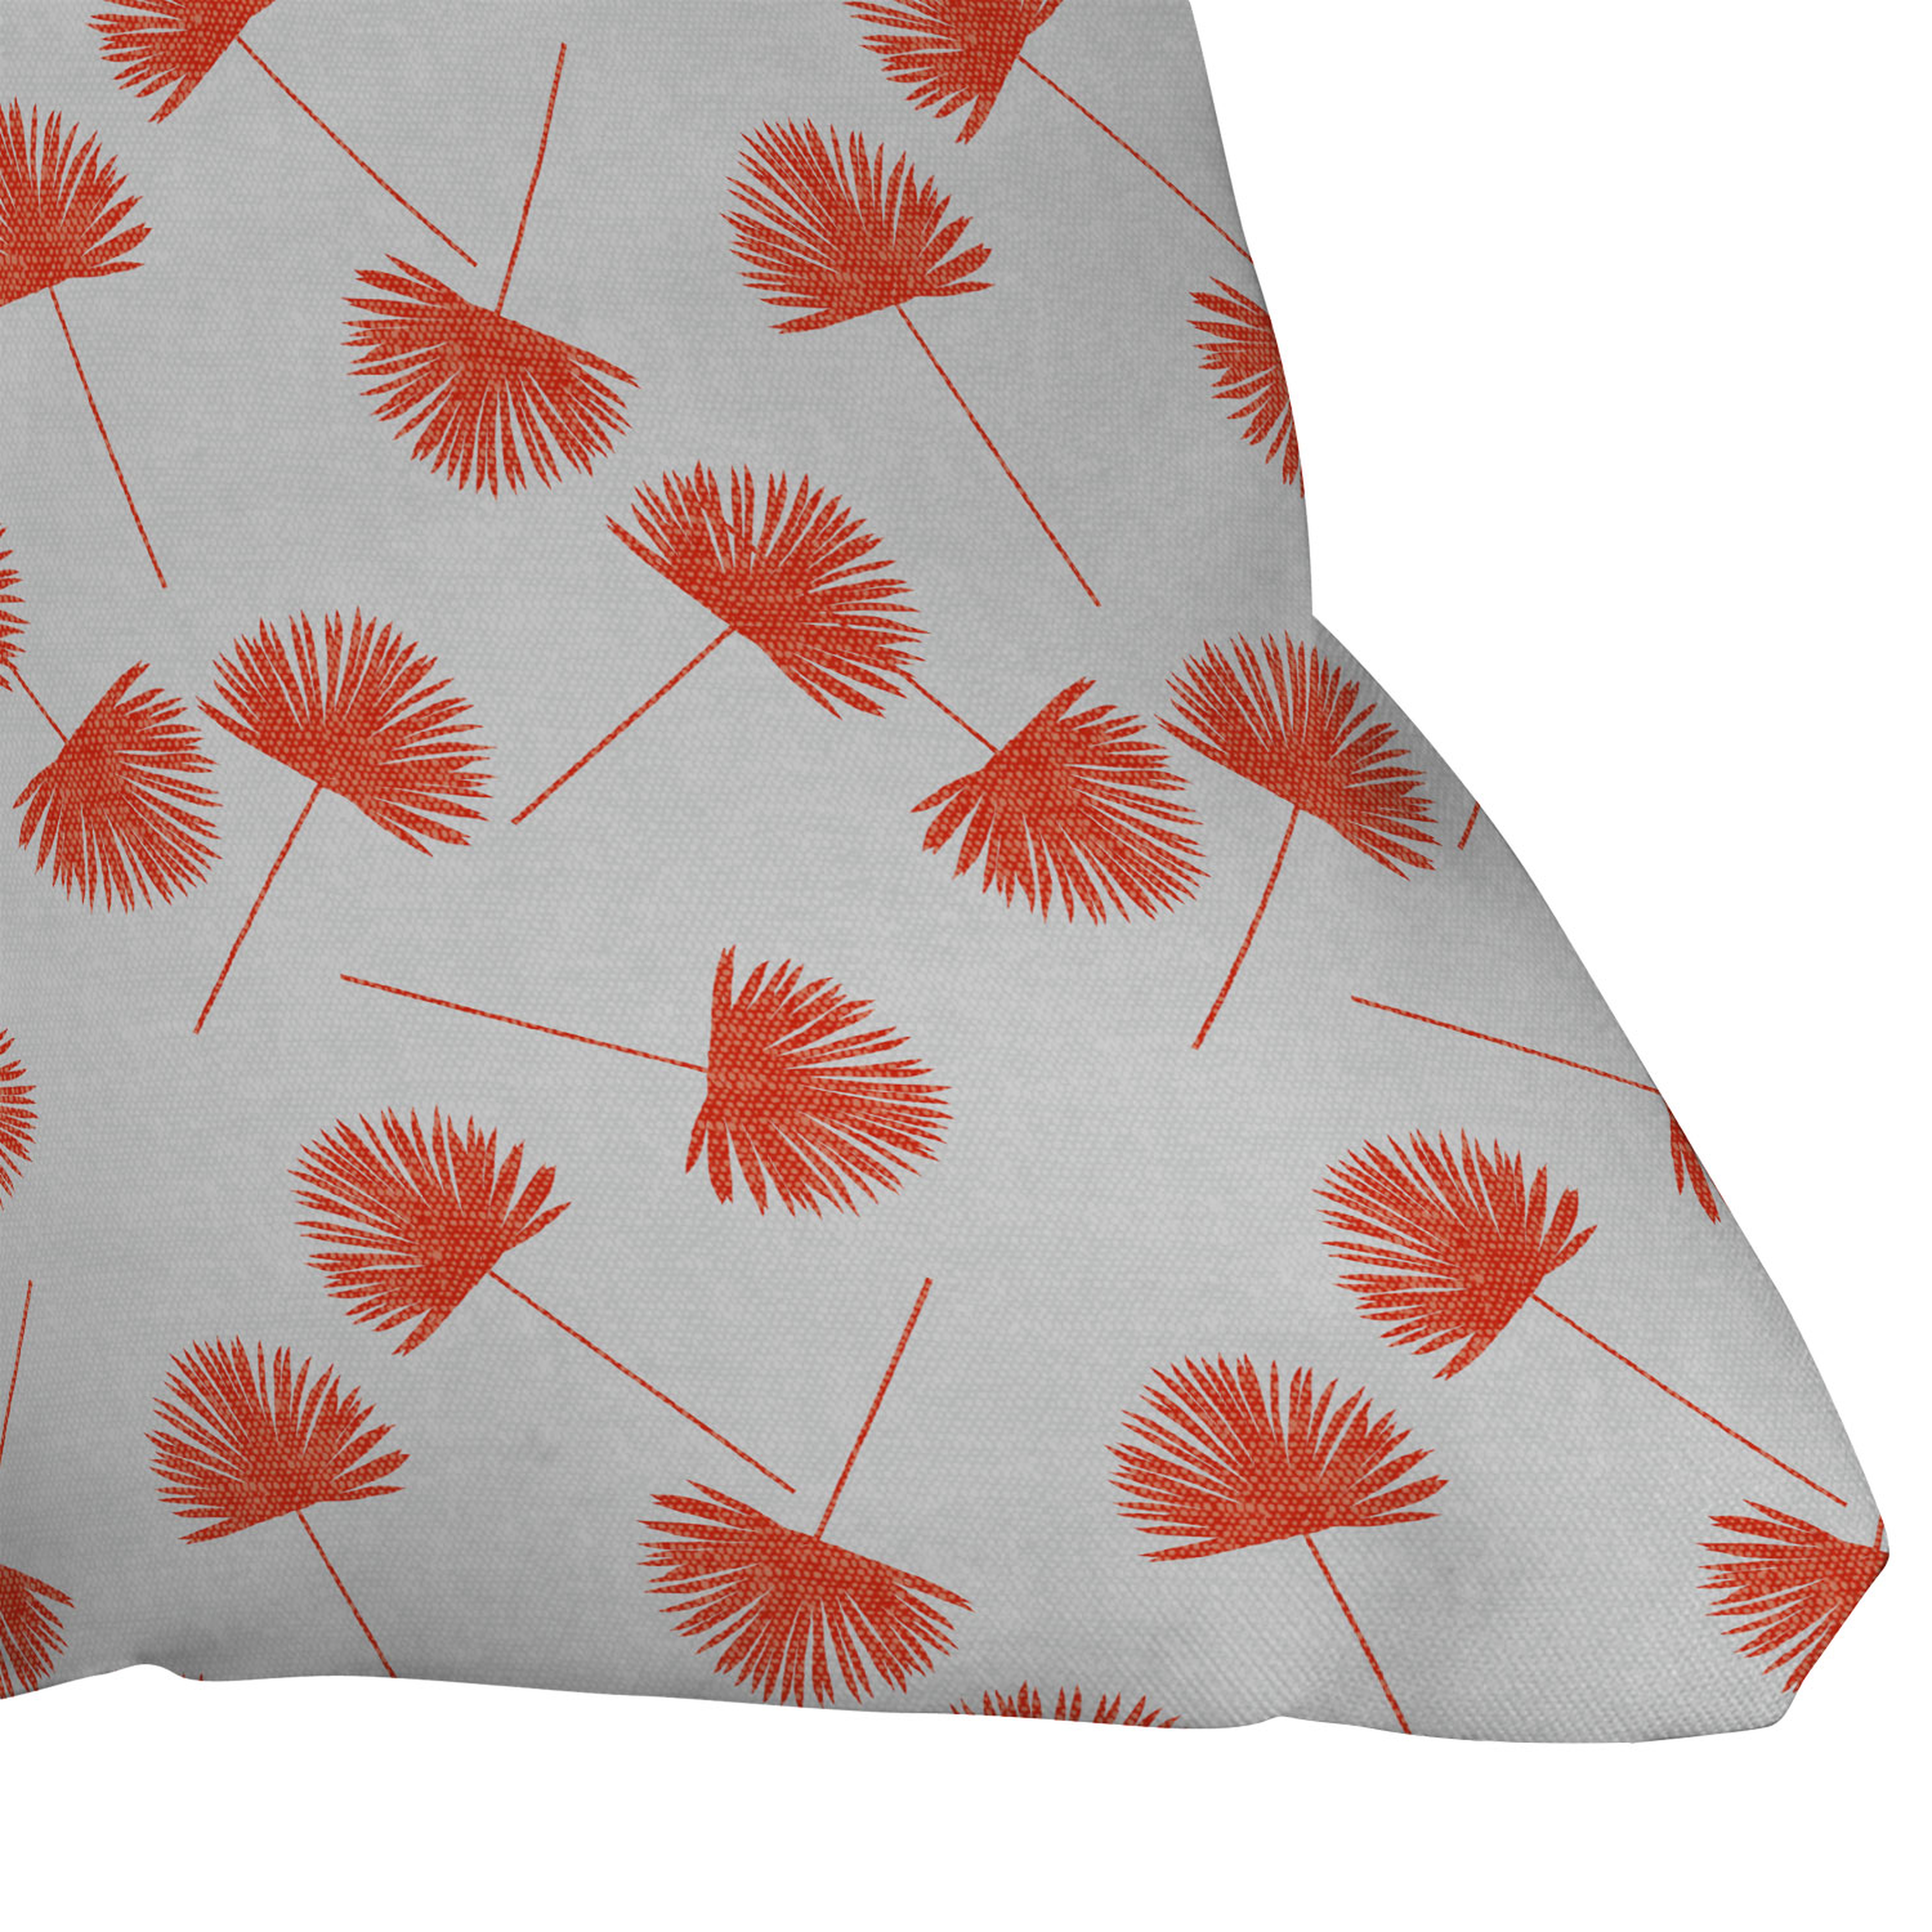 Woven Fan Palm In Orange by Little Arrow Design Co - Outdoor Throw Pillow 20" x 20" - Wander Print Co.